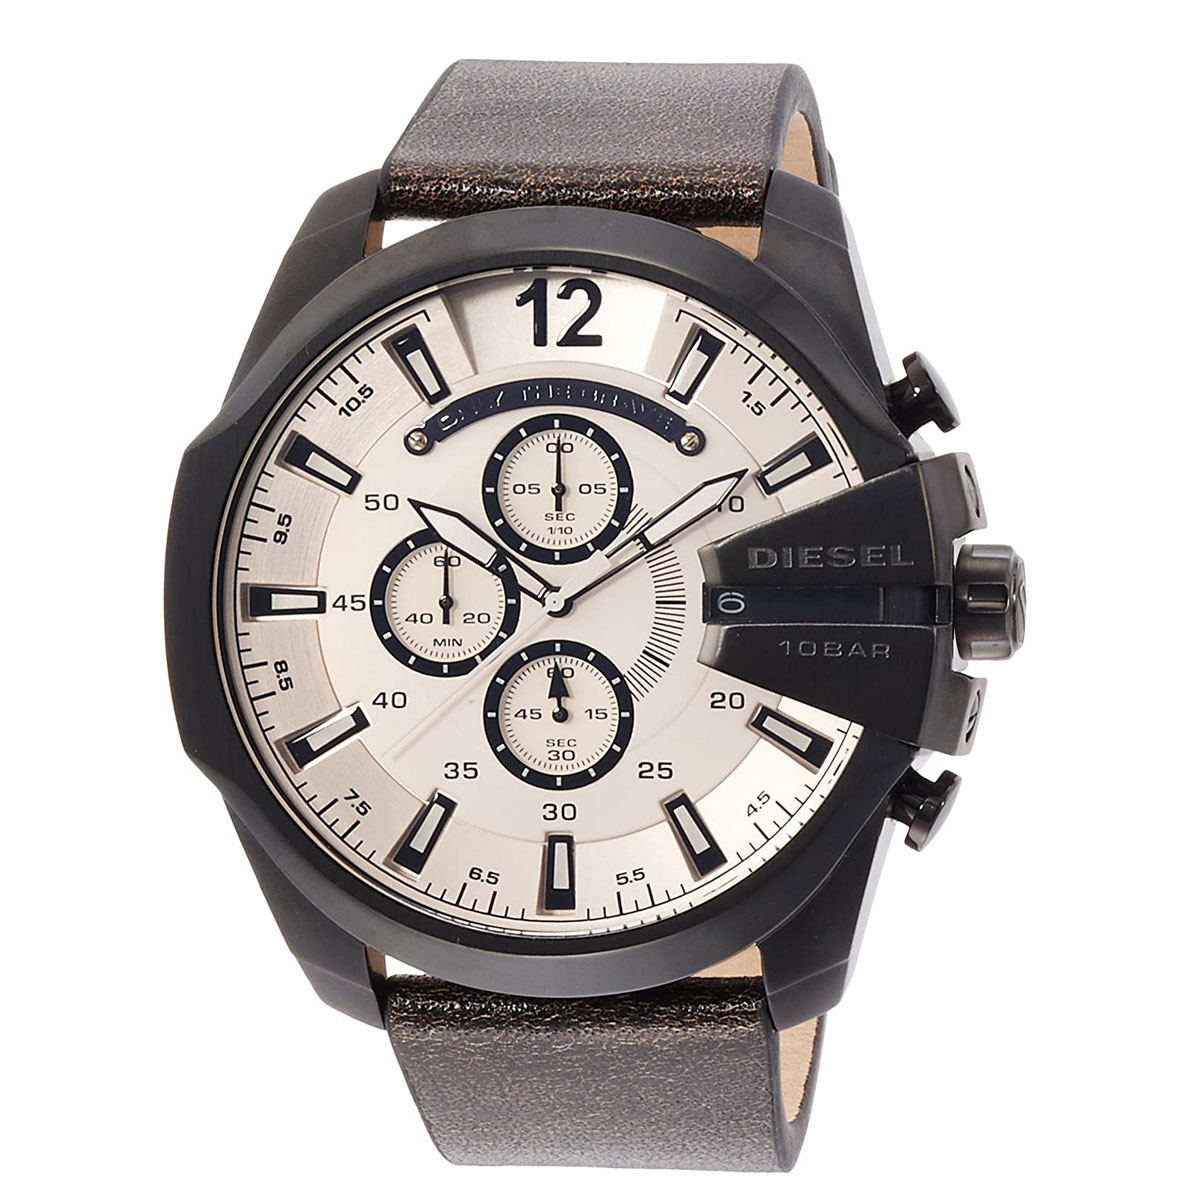 ディーゼル DIESEL 腕時計 DZ4422 MEGACHIEF メガチーフ メンズ ウォッチ 革ベルト ベージュ＋ブラック ディーゼル DIESEL 腕時計 メンズ